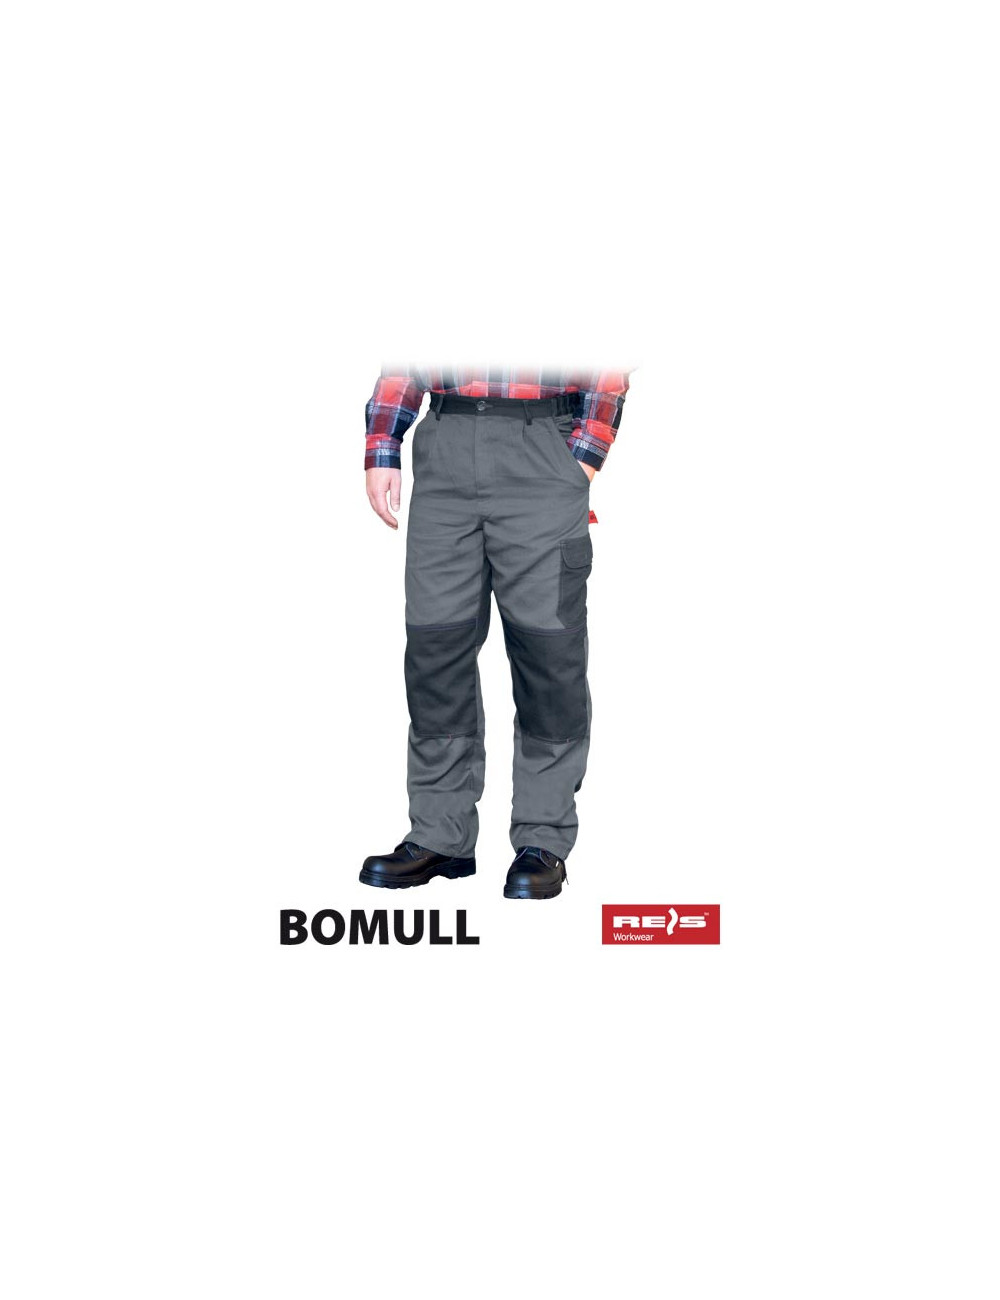 Bomull-t sds waist trousers gray/dark gray Reis